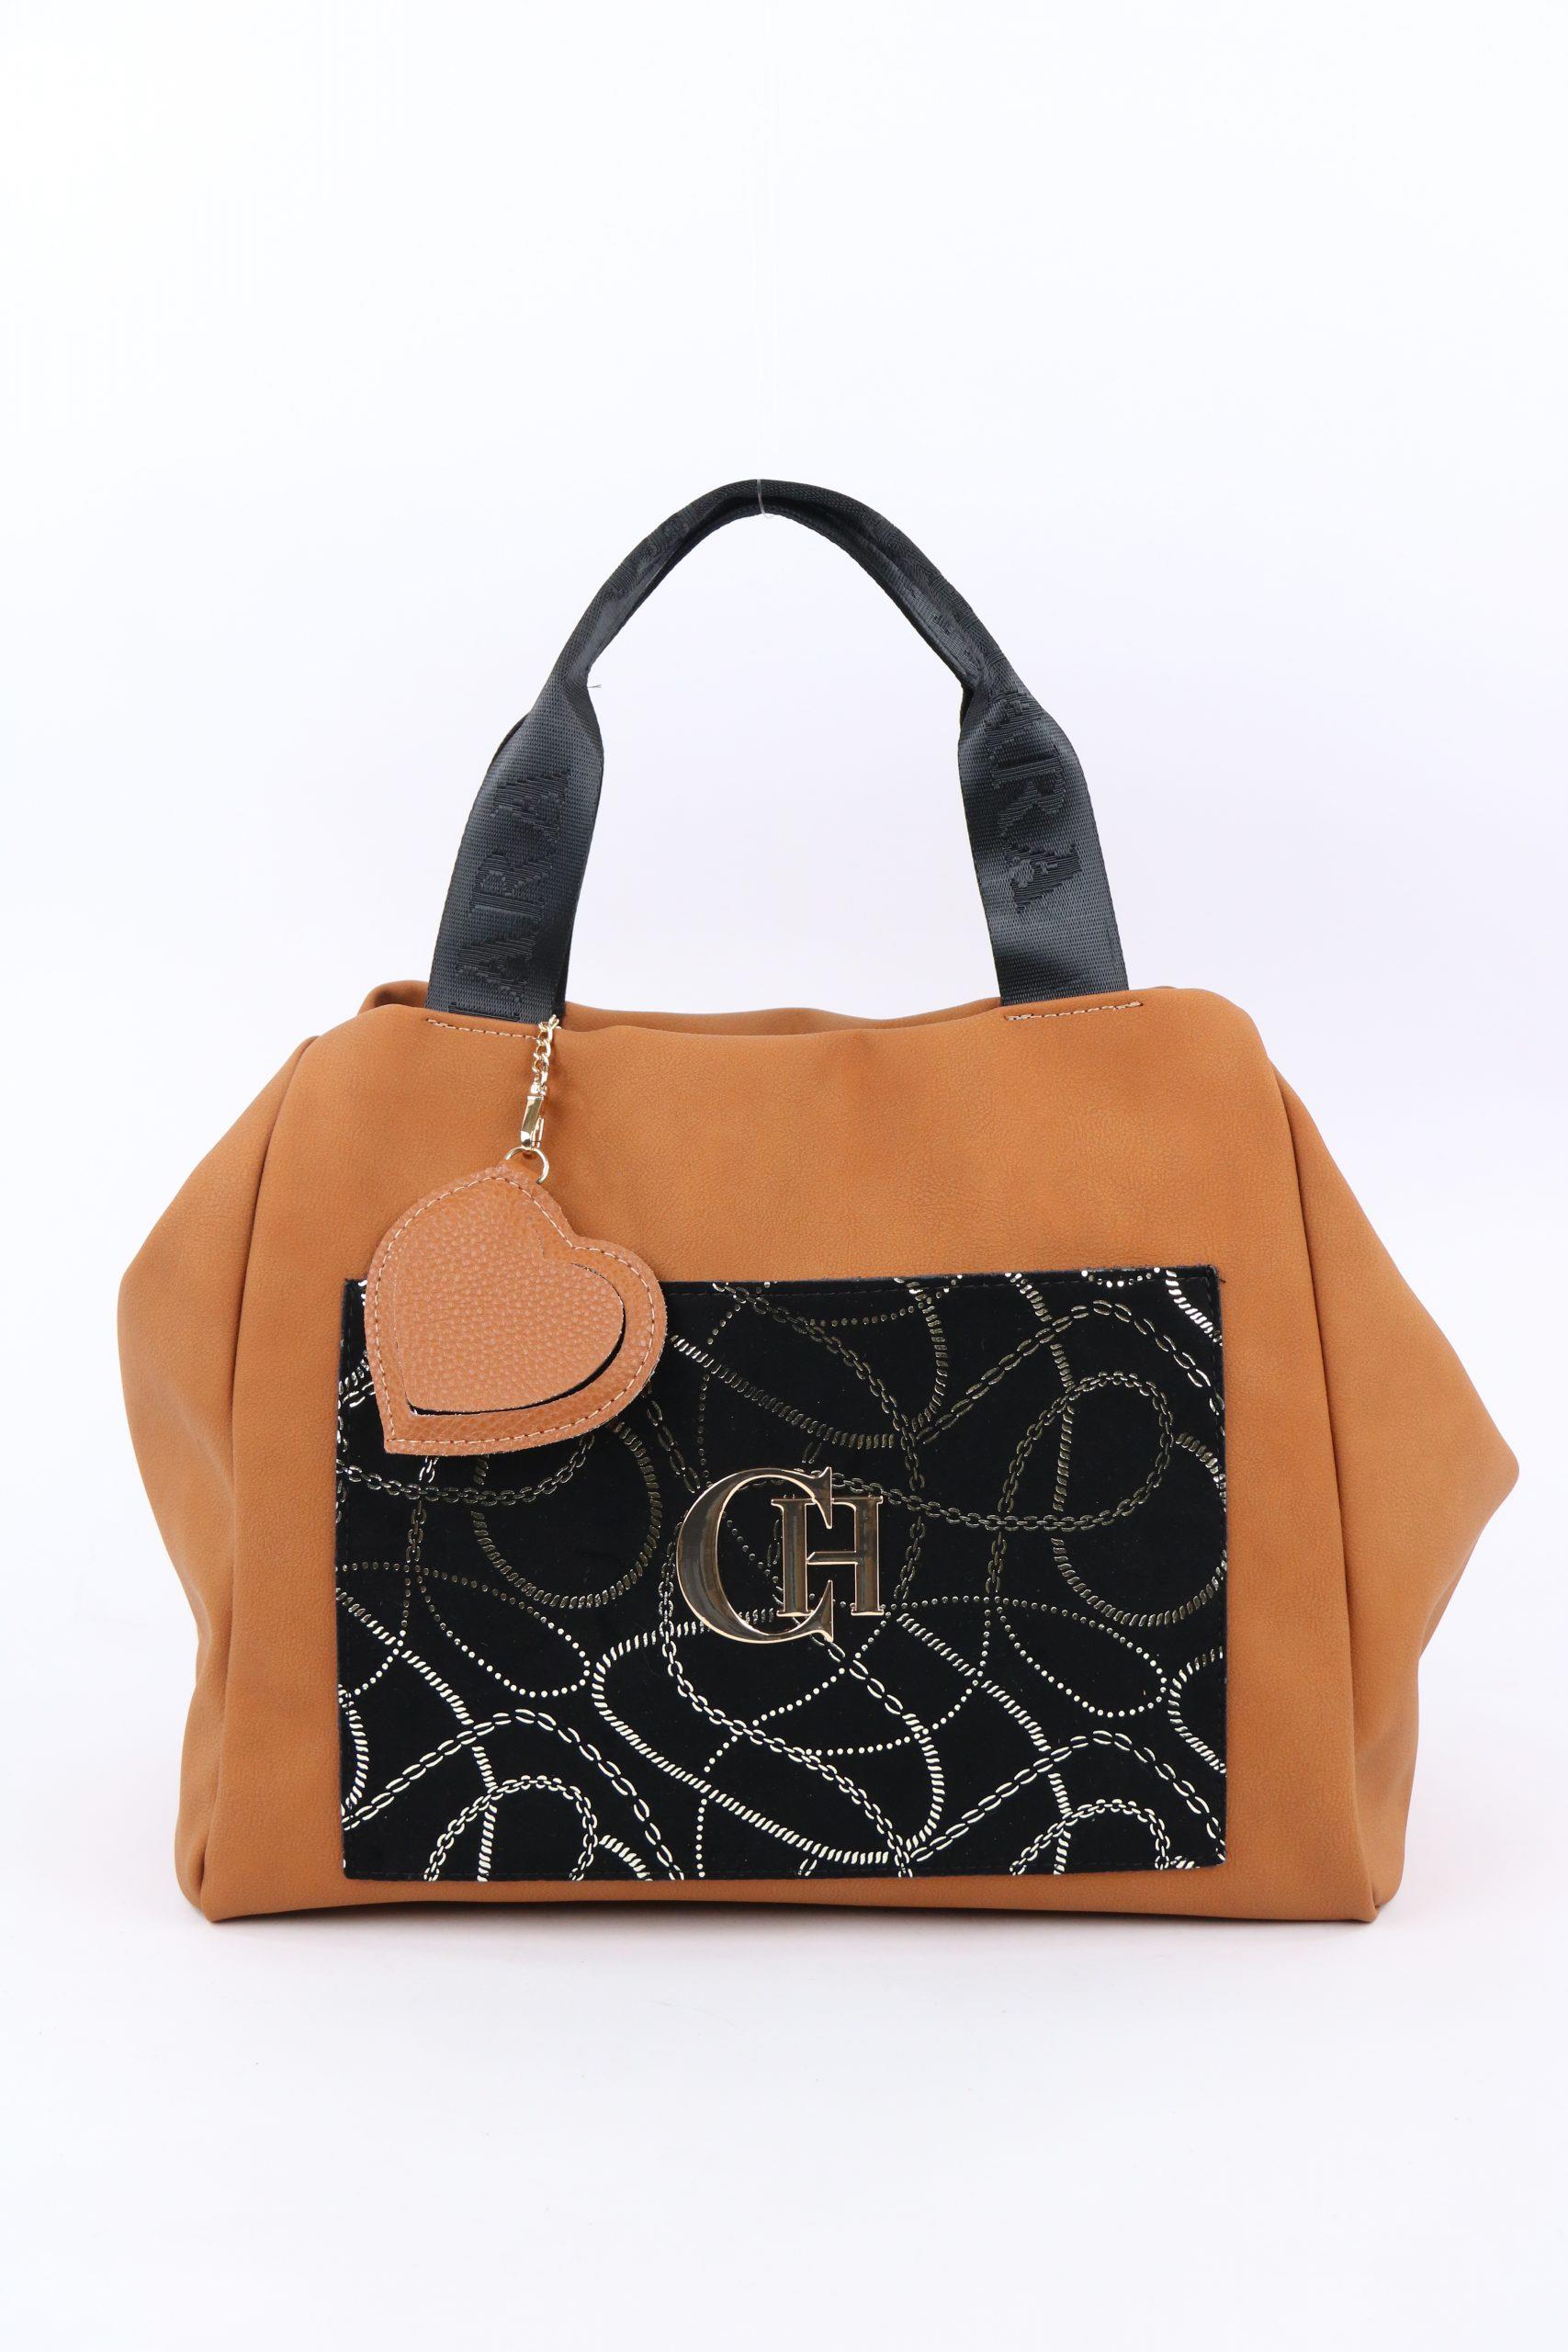 Chiara Woman's Bag M869